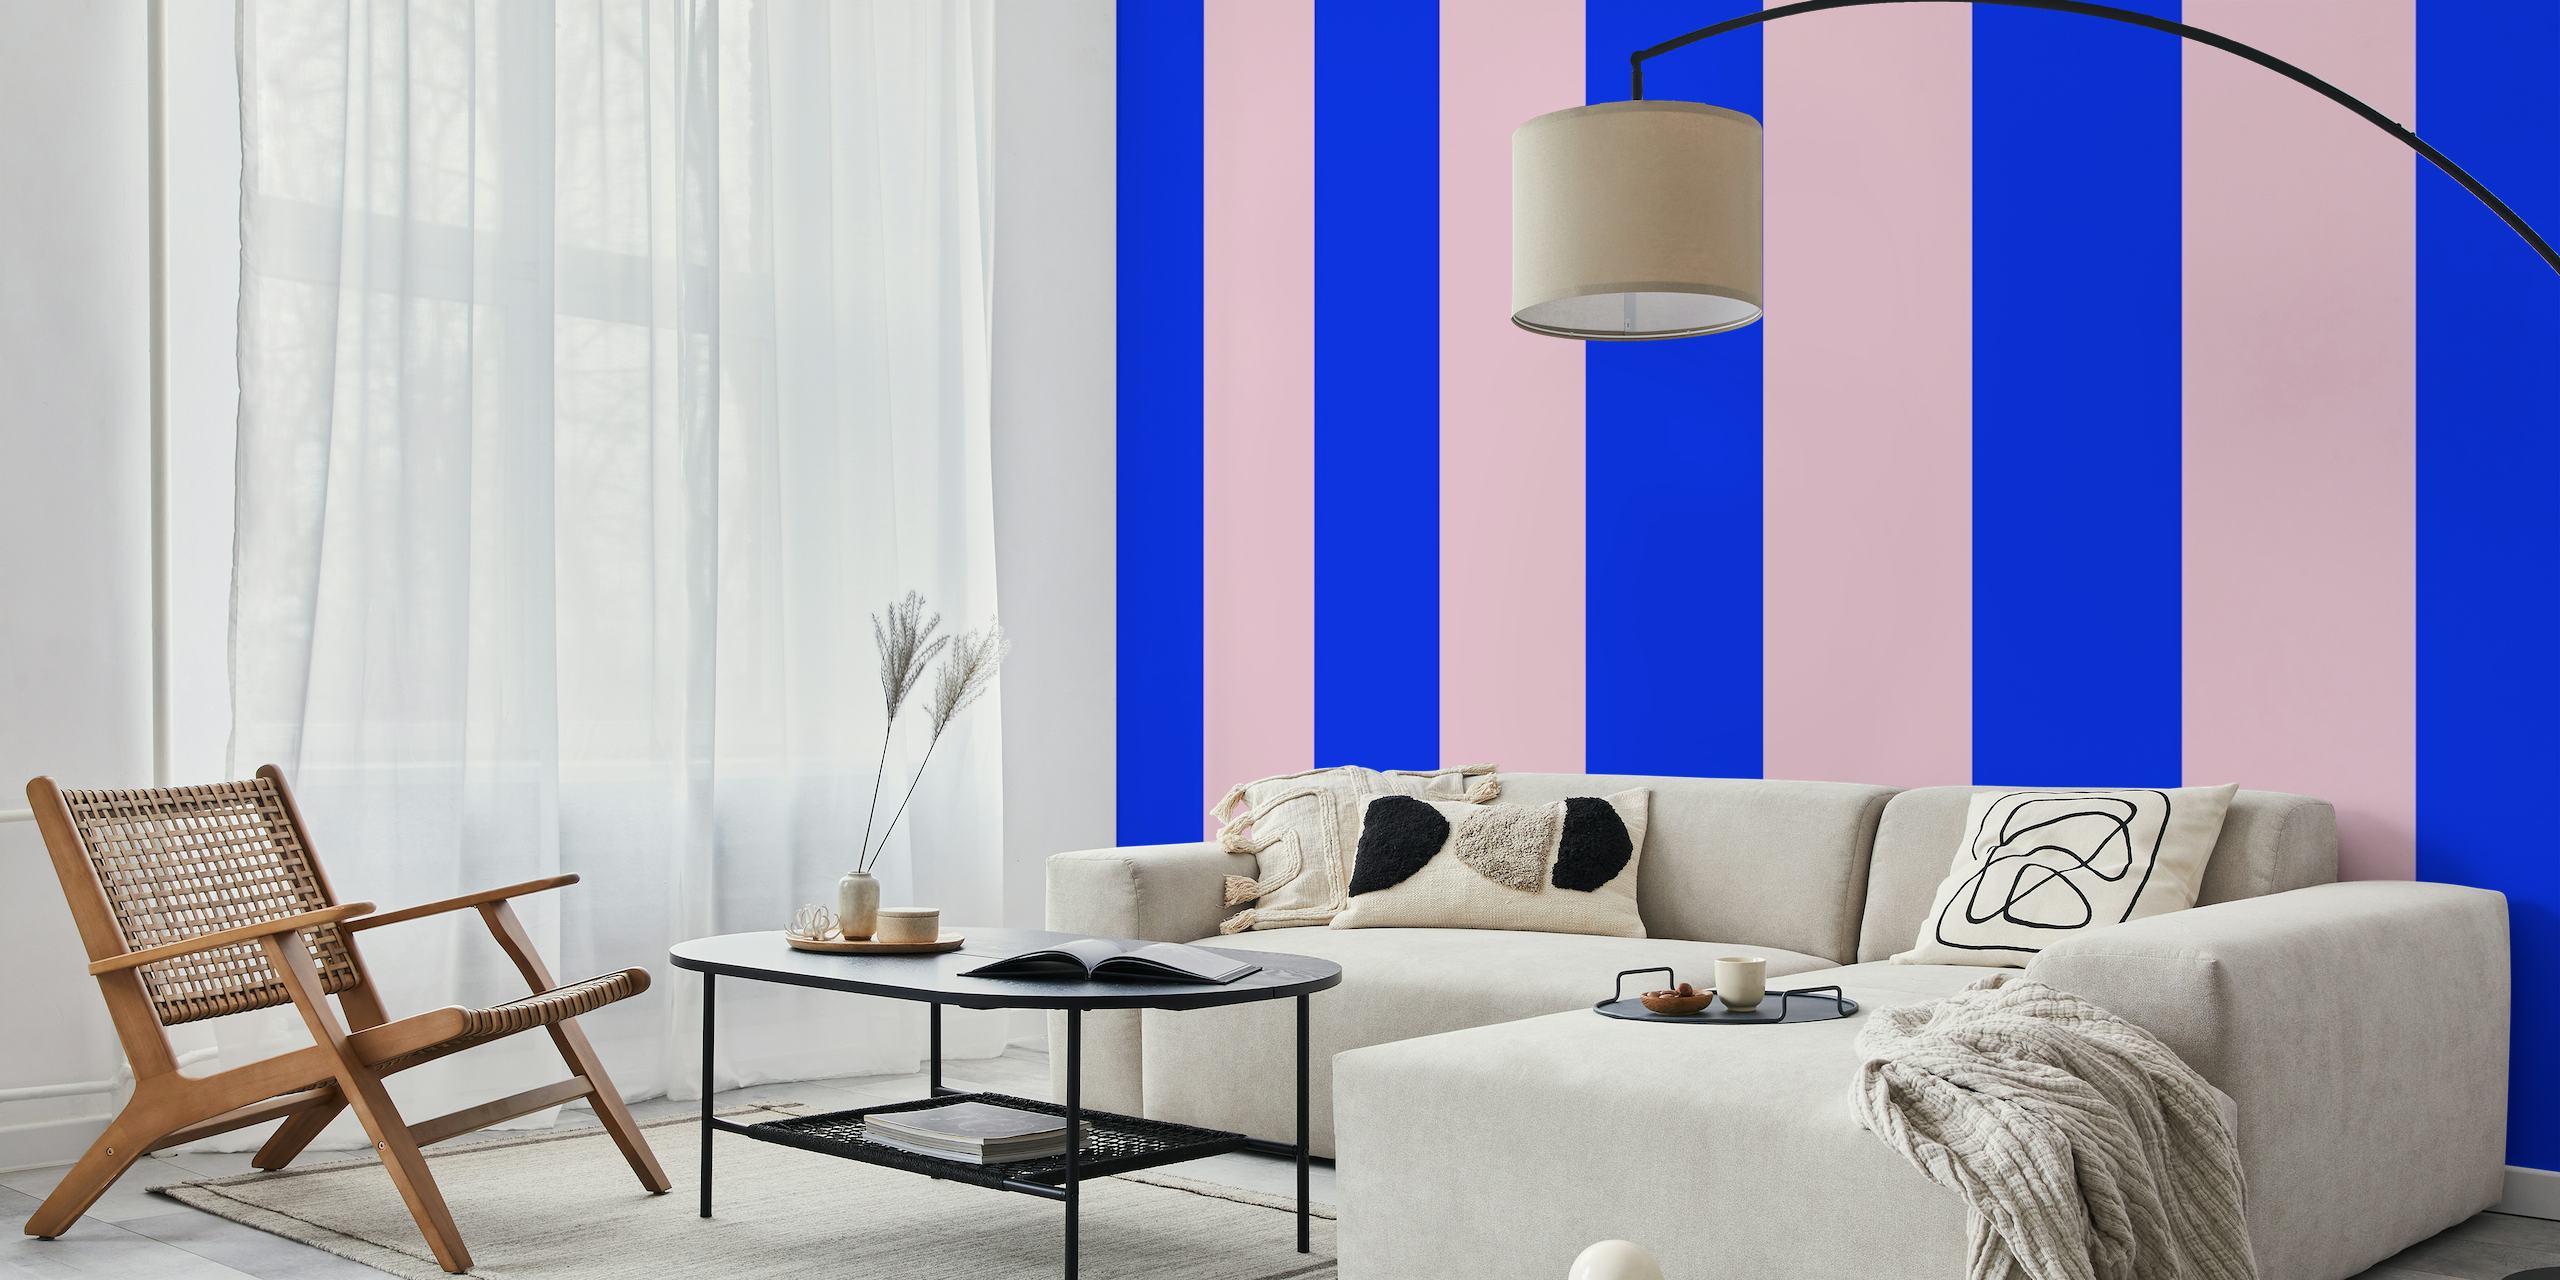 Blau und rosa gestreifte Fototapete von Happywall mit dem Namen Blau Rosa Streifen